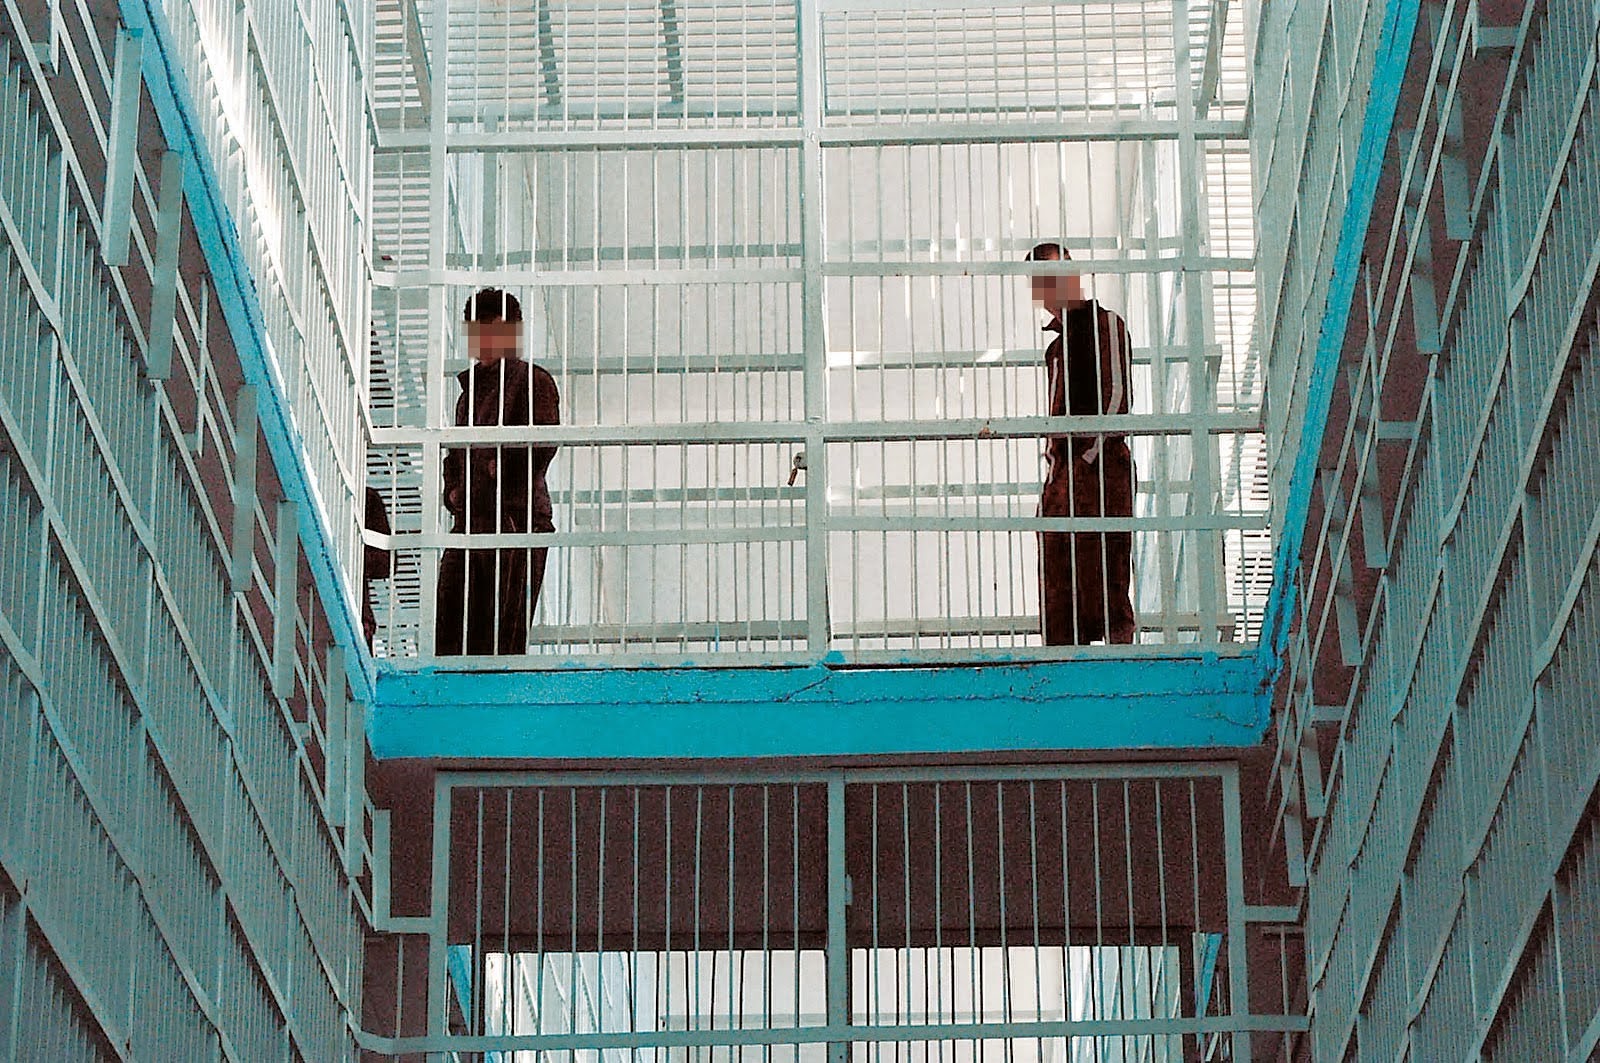 Φυλακισμένοι δραπέτευσαν από το κελί τους για να σώσουν φρουρό από καρδιακό επεισόδιο - Πανικοβλήθηκαν οι Αρχές - VIDEO